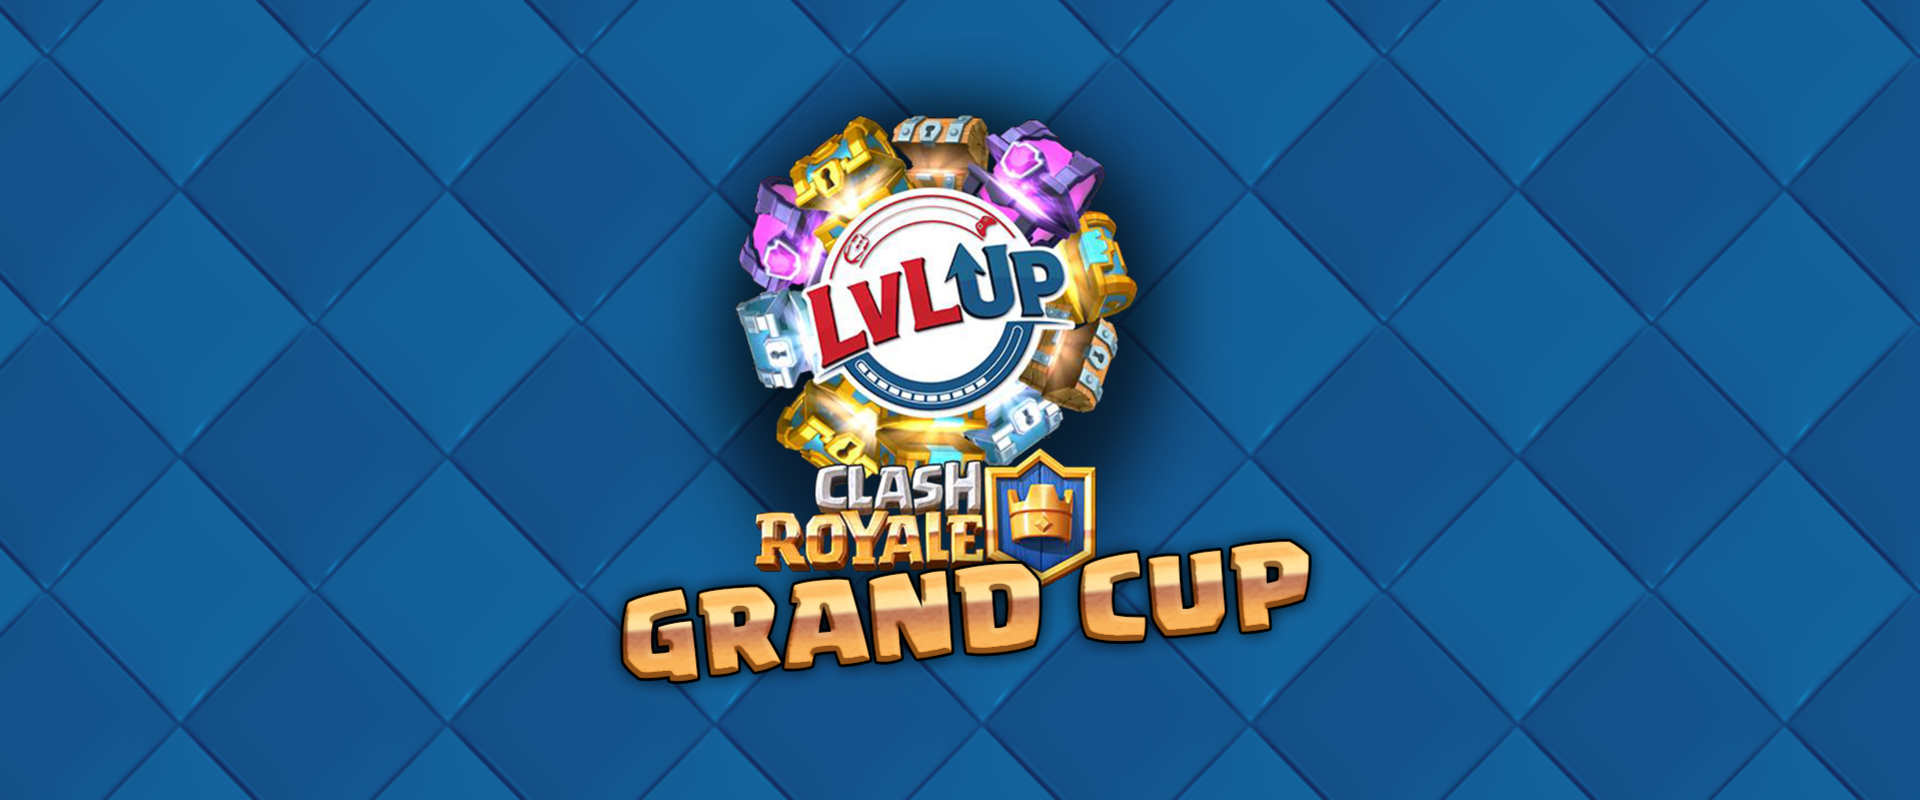 Versenyajánló: Próbáljatok szerencsét a LvL Up Grand Cup-on!